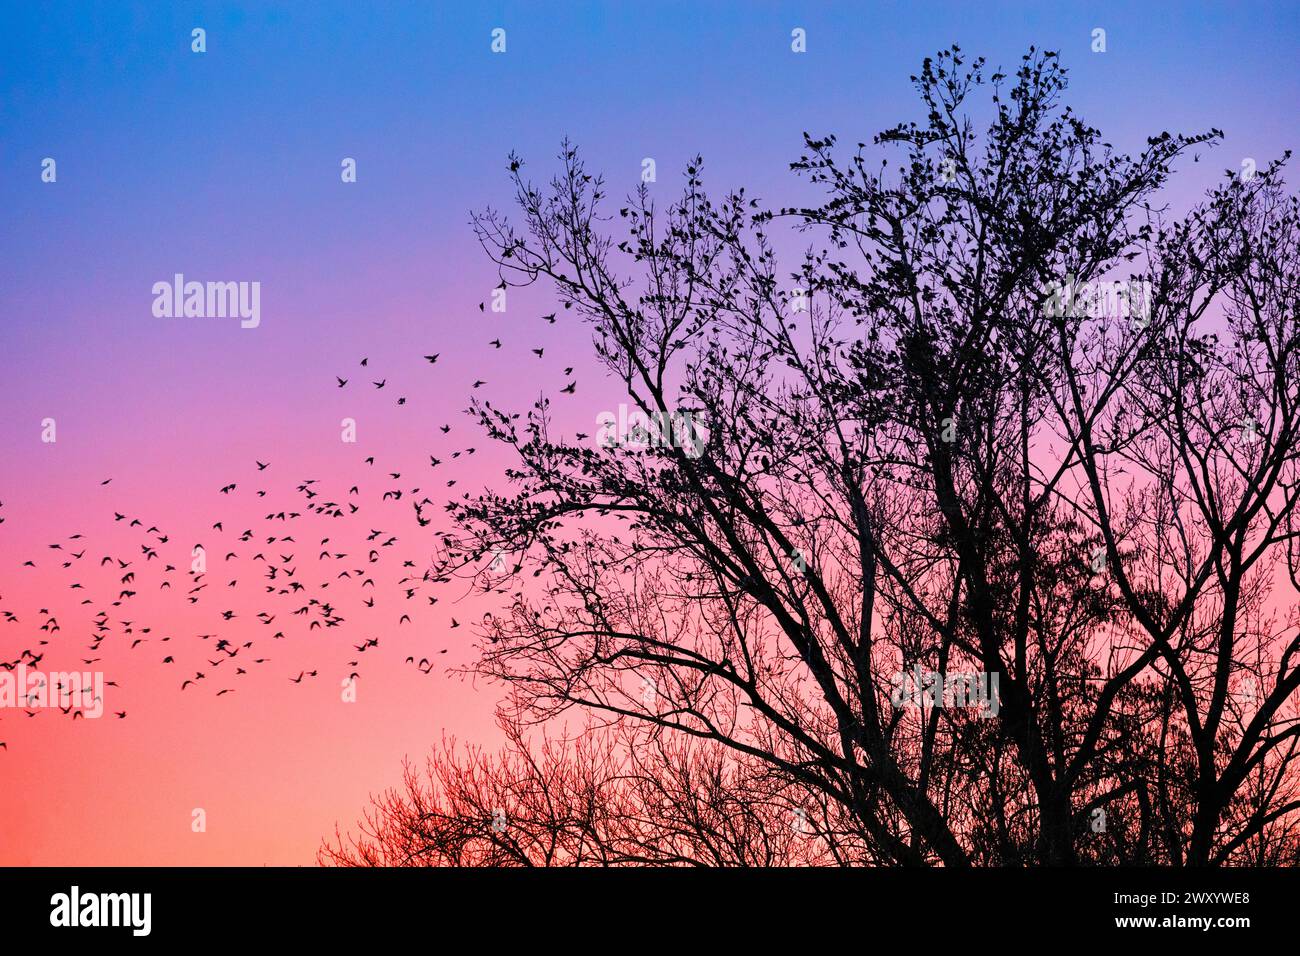 common starling (Sturnus vulgaris), starlings gathering in treetops at sunset, Switzerland Stock Photo